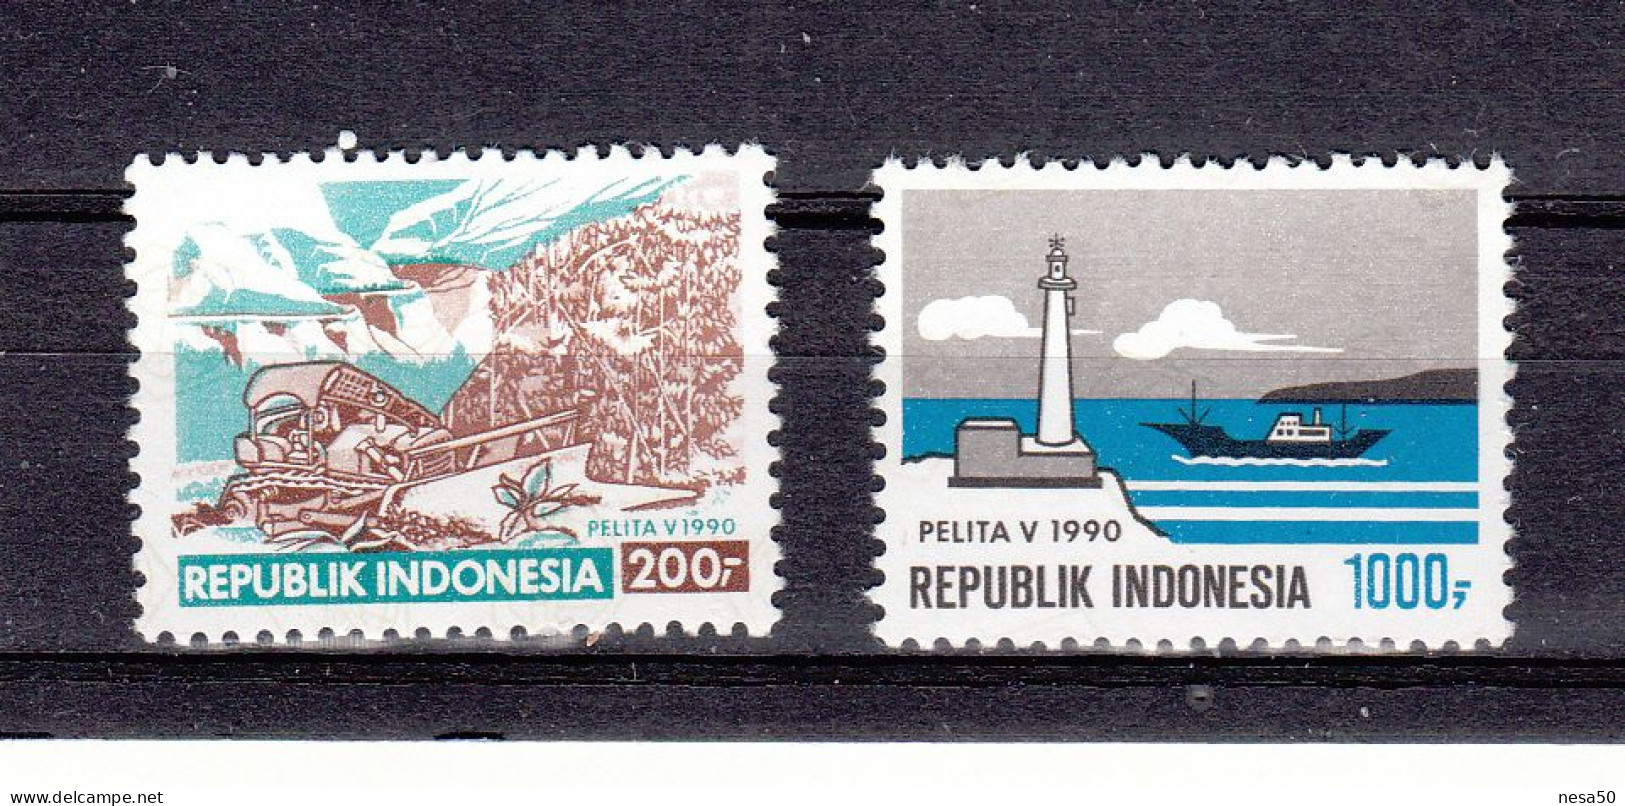 Indonesië 1990 Mi Nr 1344 + 1345 , Werken Aan Straten, Schipvaart, Vuurtoren. Lighthouse - Indonesië